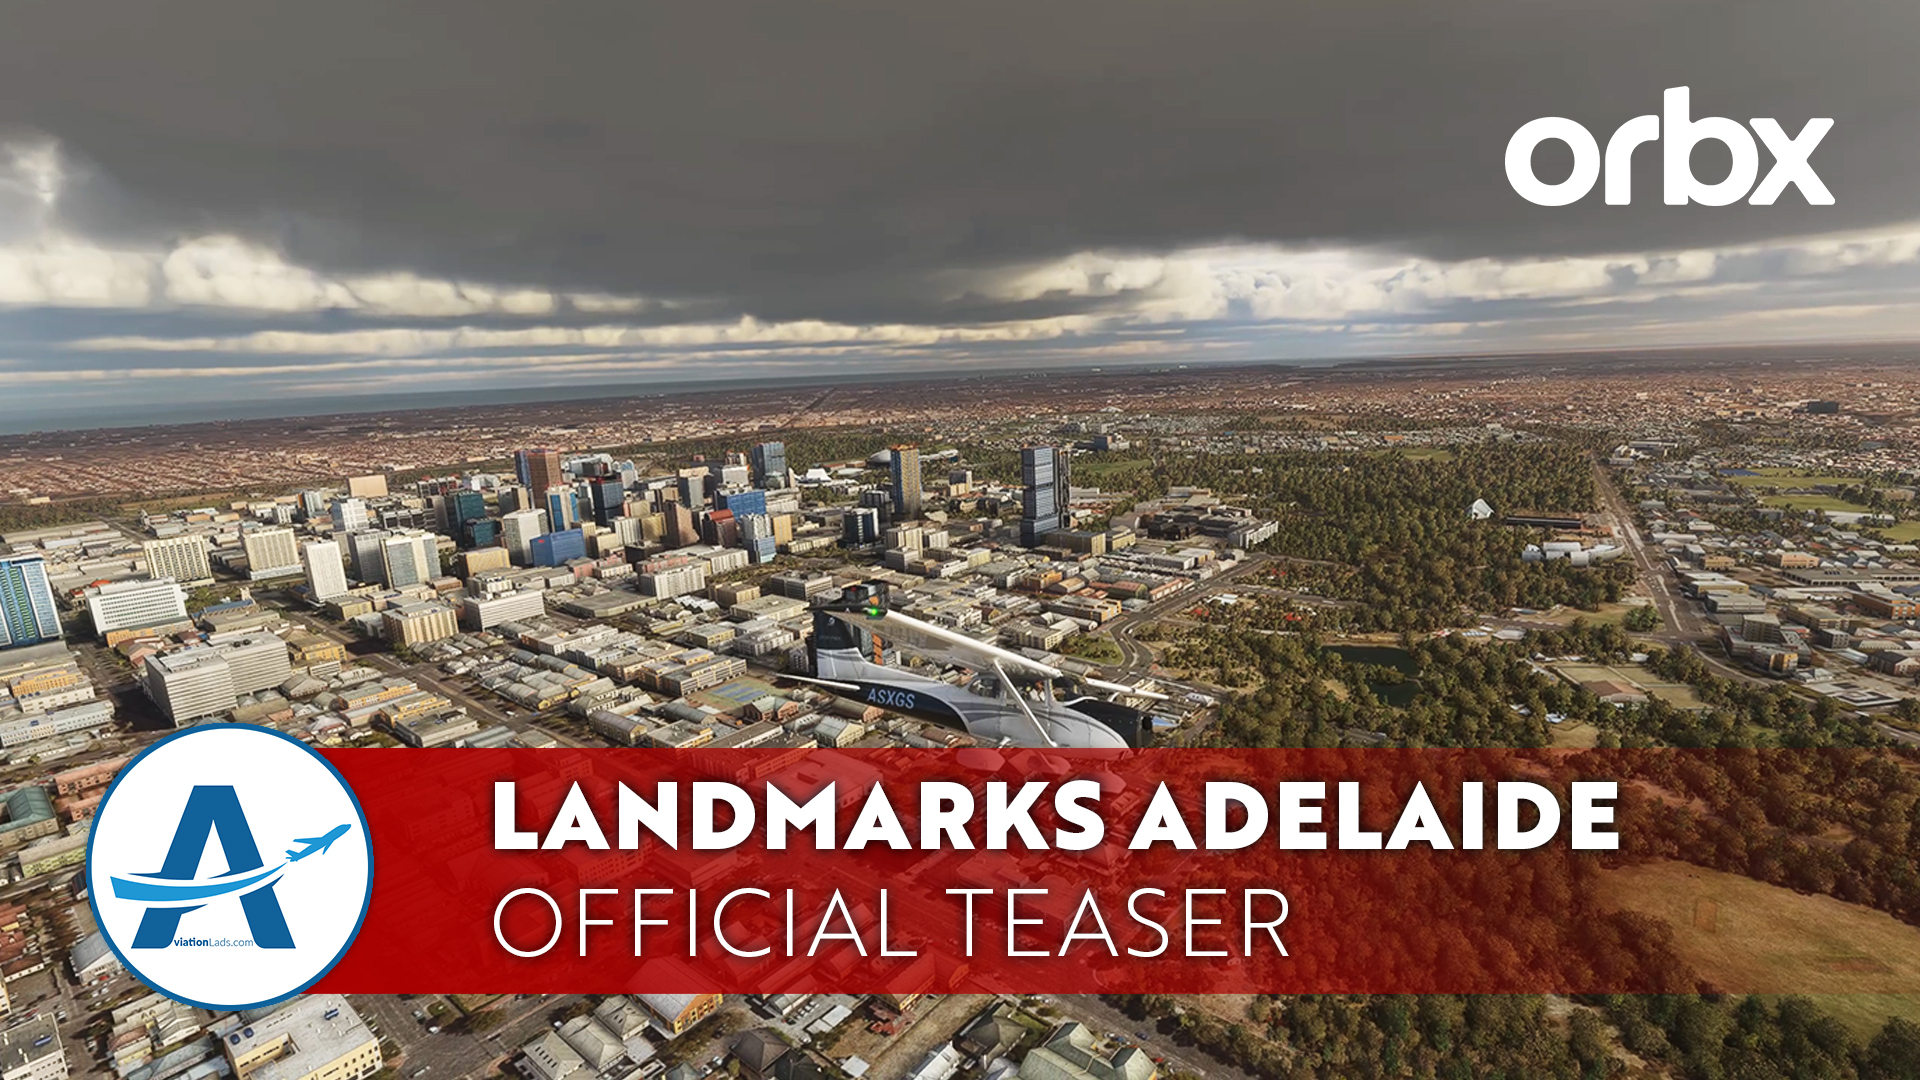 [TEASER] Orbx Landmarks Adelaide